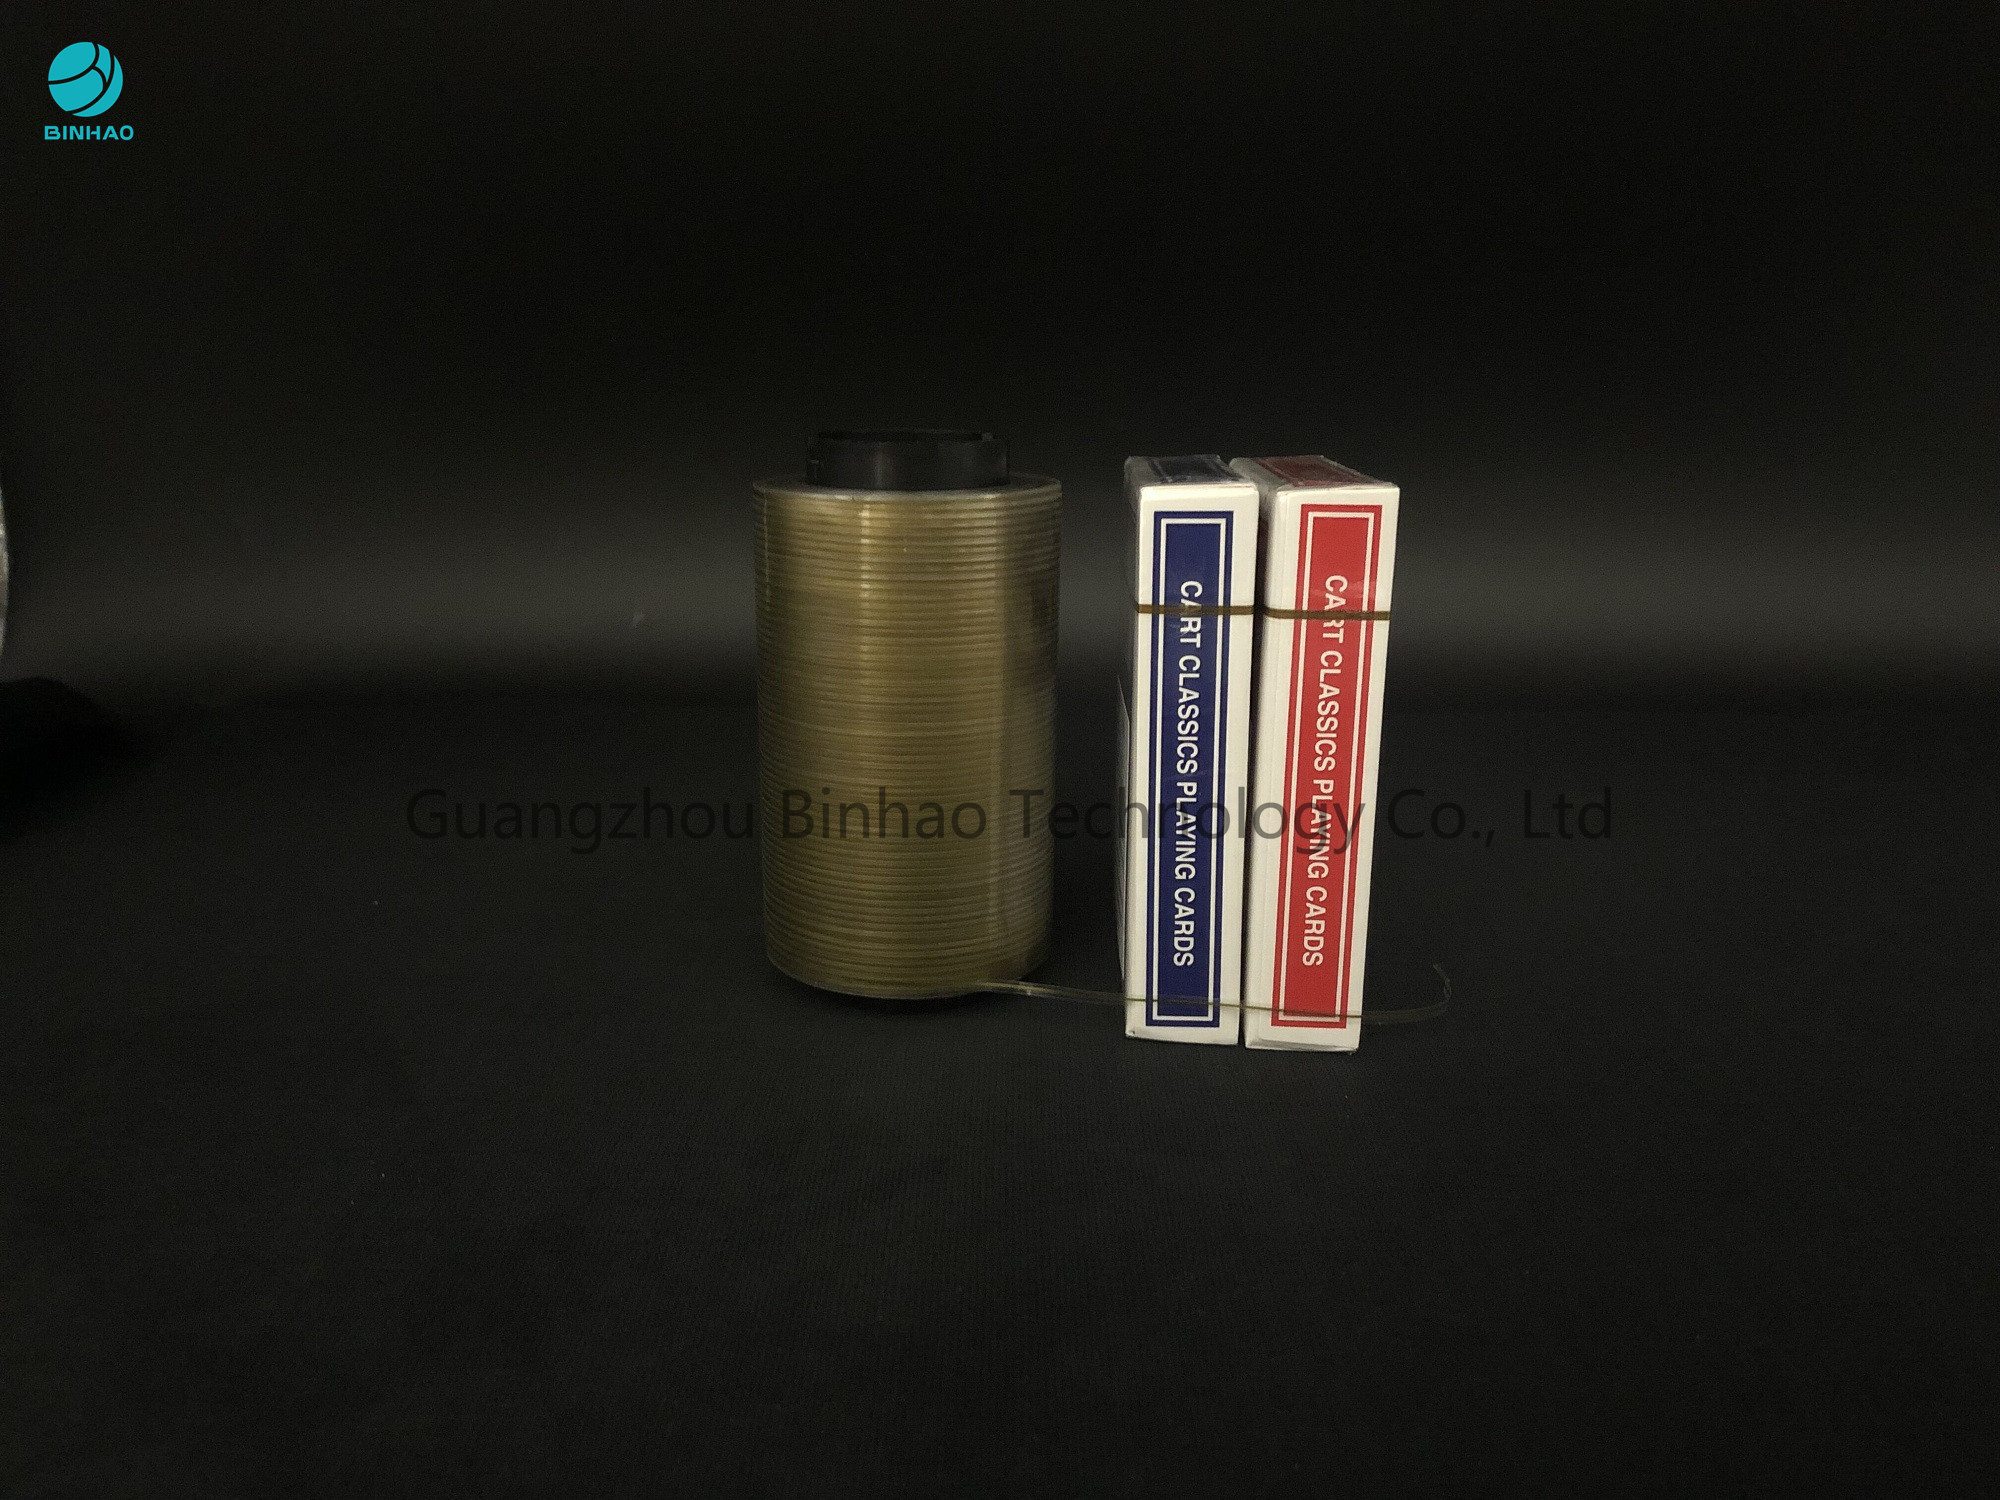 Línea olográfica cinta del oro del ANIMAL DOMÉSTICO de la tira de rasgón para la caja de naipes que empaqueta con tiempo de almacenamiento largo